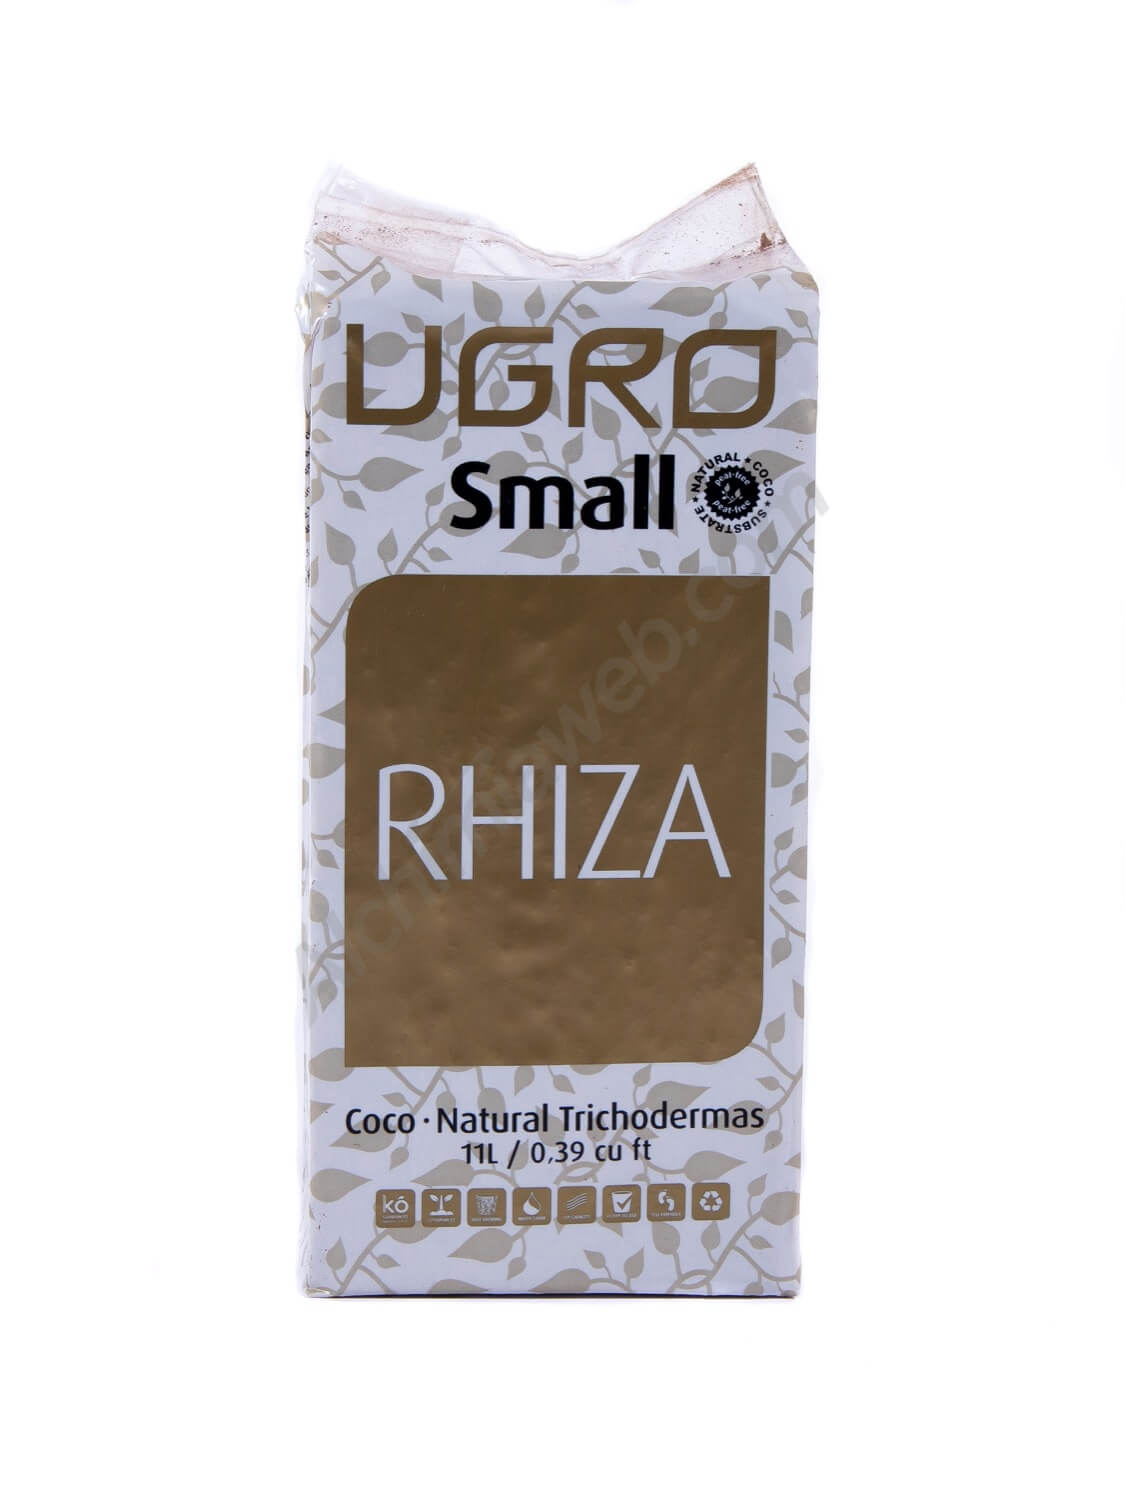 U-Gro Small Rhiza. Coco prensado con Microrrizas